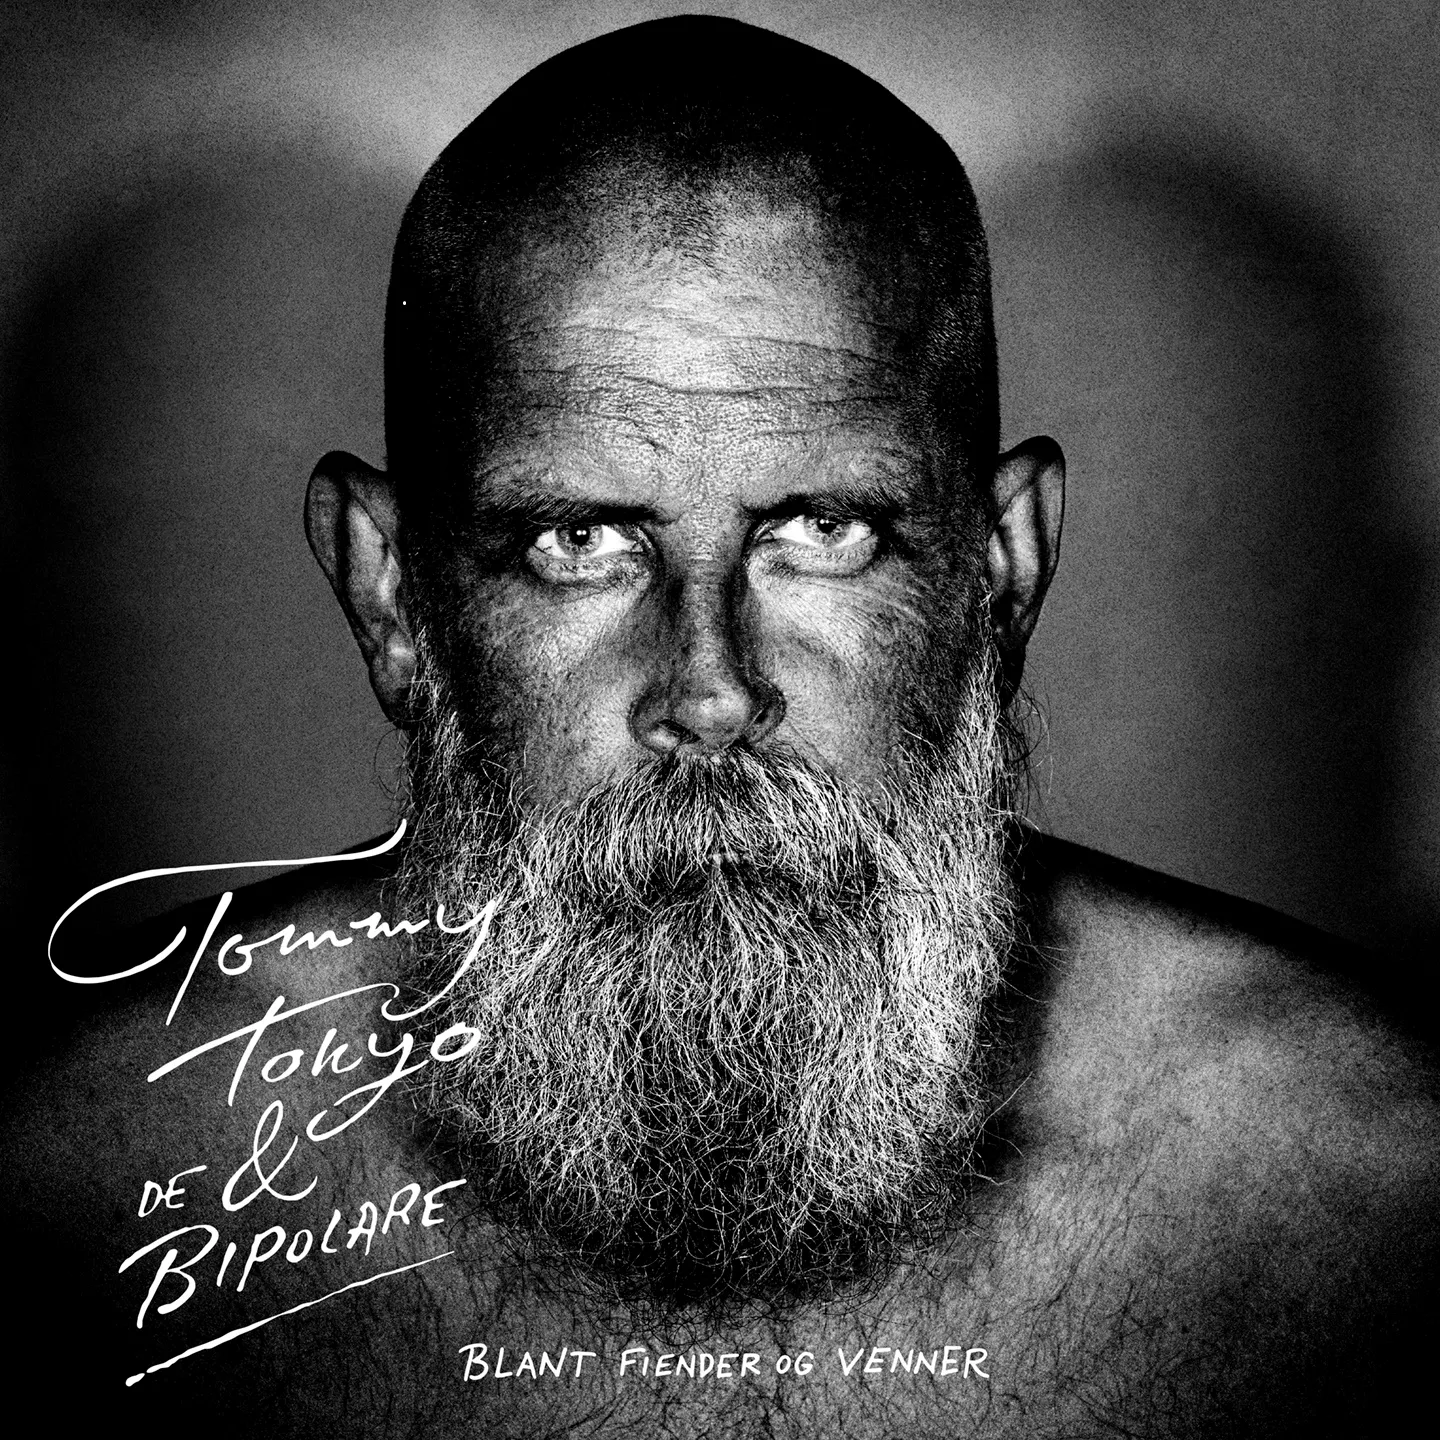 Blant Fiender Og Venner - Tommy Tokyo & De Bipolare